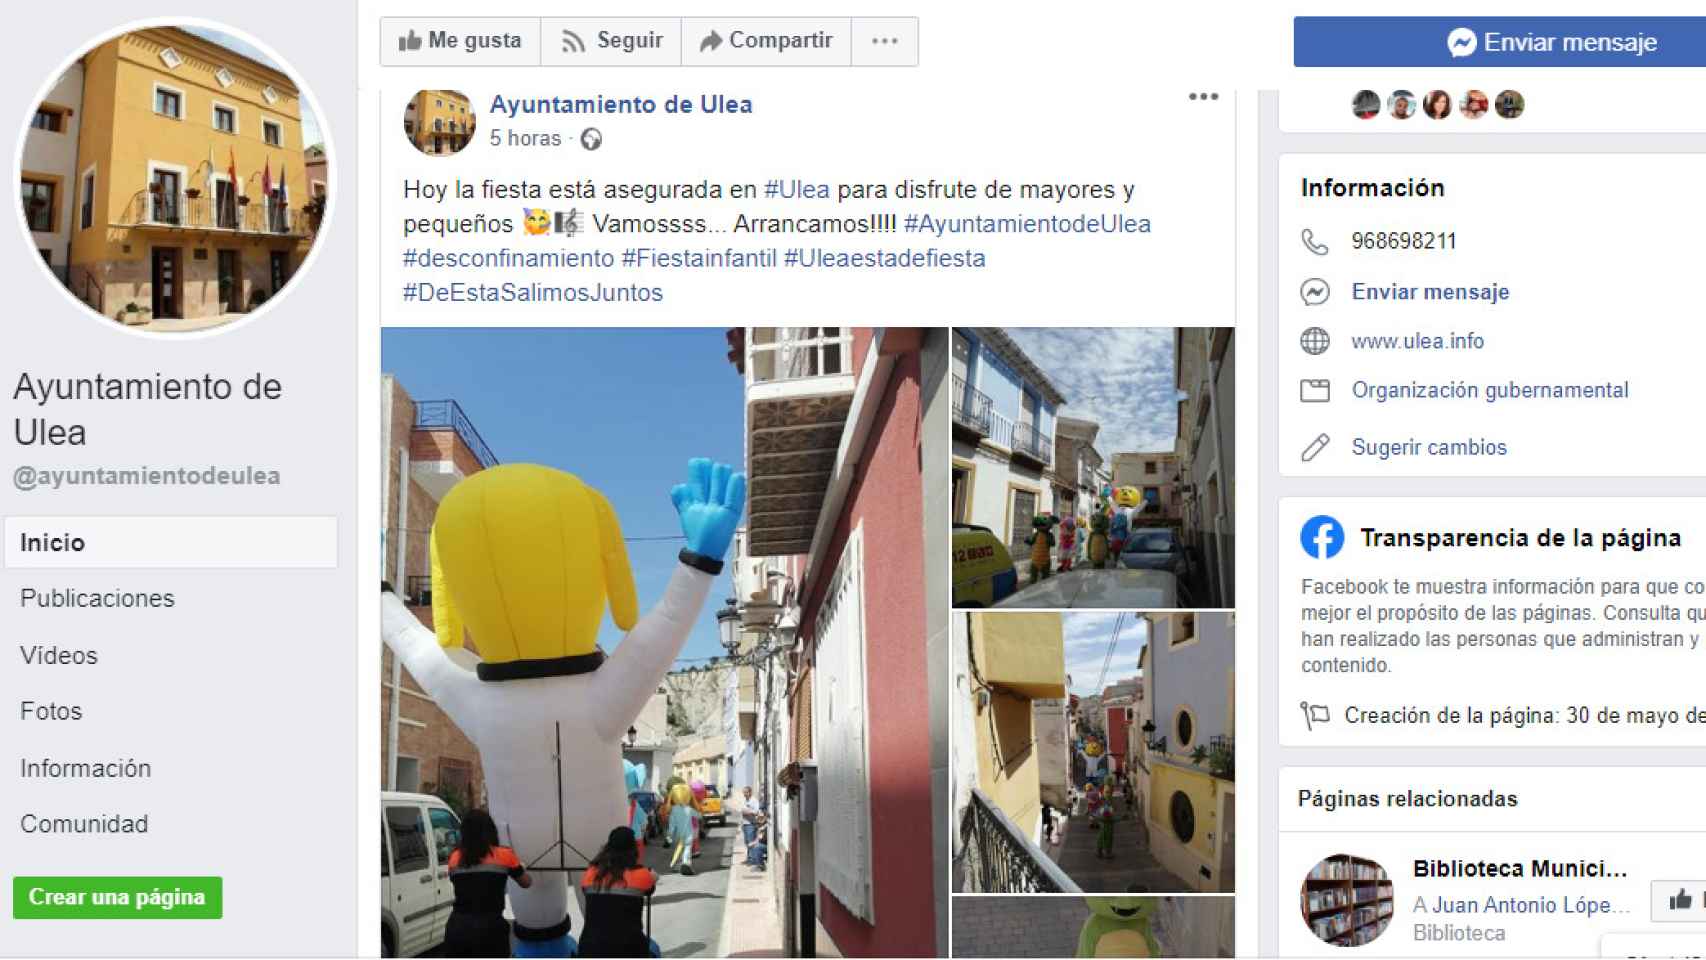 El Ayuntamiento ha promocionado el desfile en su cuenta de Facebbok con los hastags: #Desconfinamiento, #FiestaInfantil o #UleaEstádeFiesta.